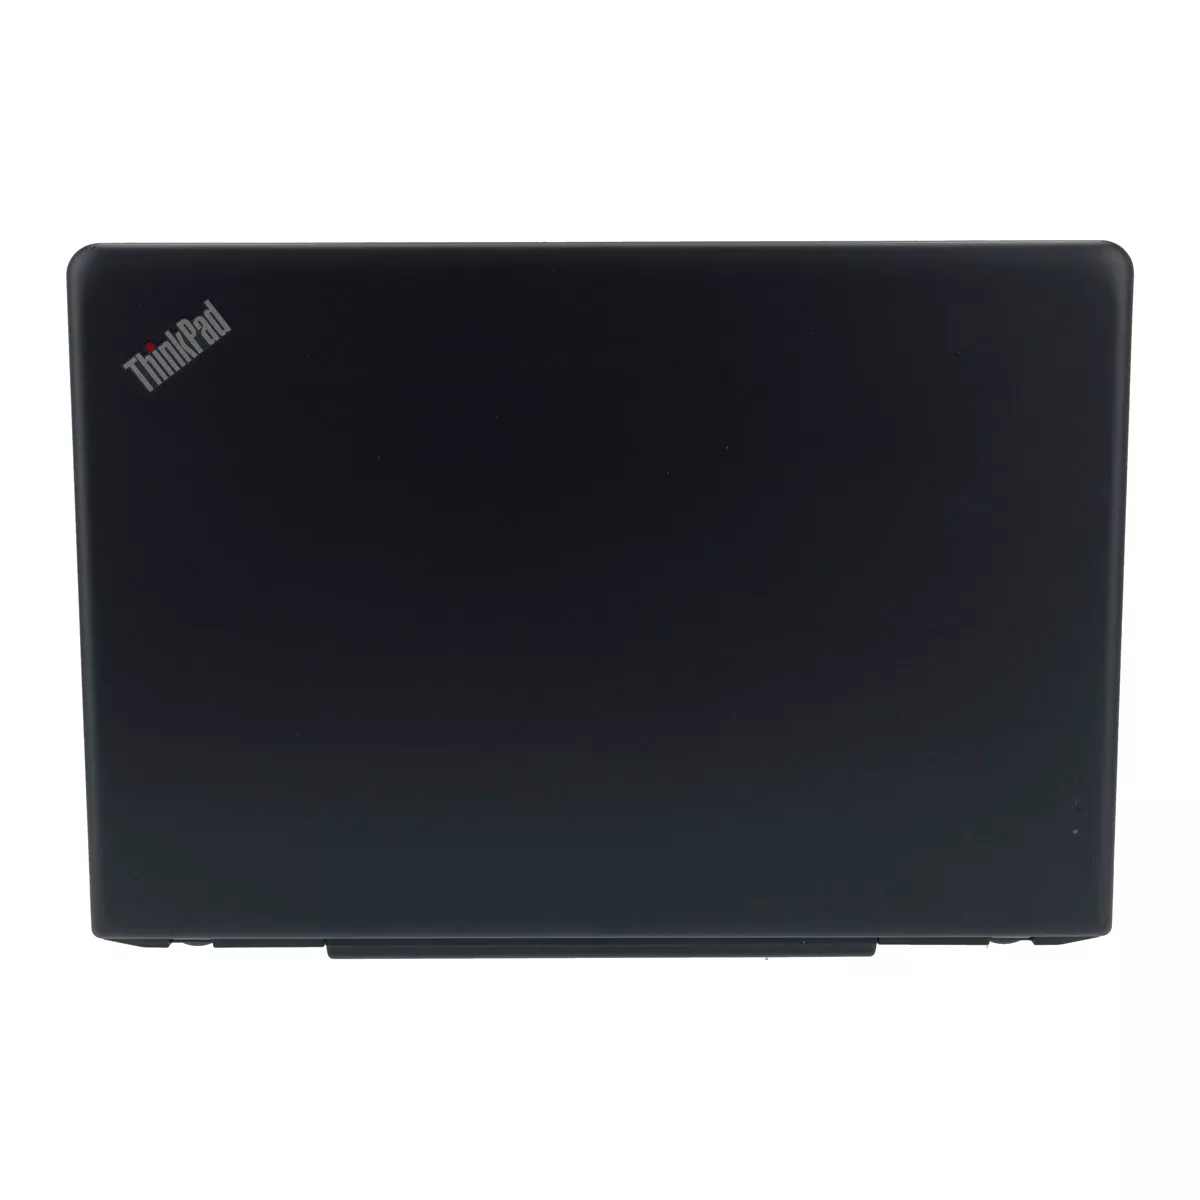 Lenovo ThinkPad E570 Core i5 7200U 8 GB 240 GB M.2 SSD Webcam B